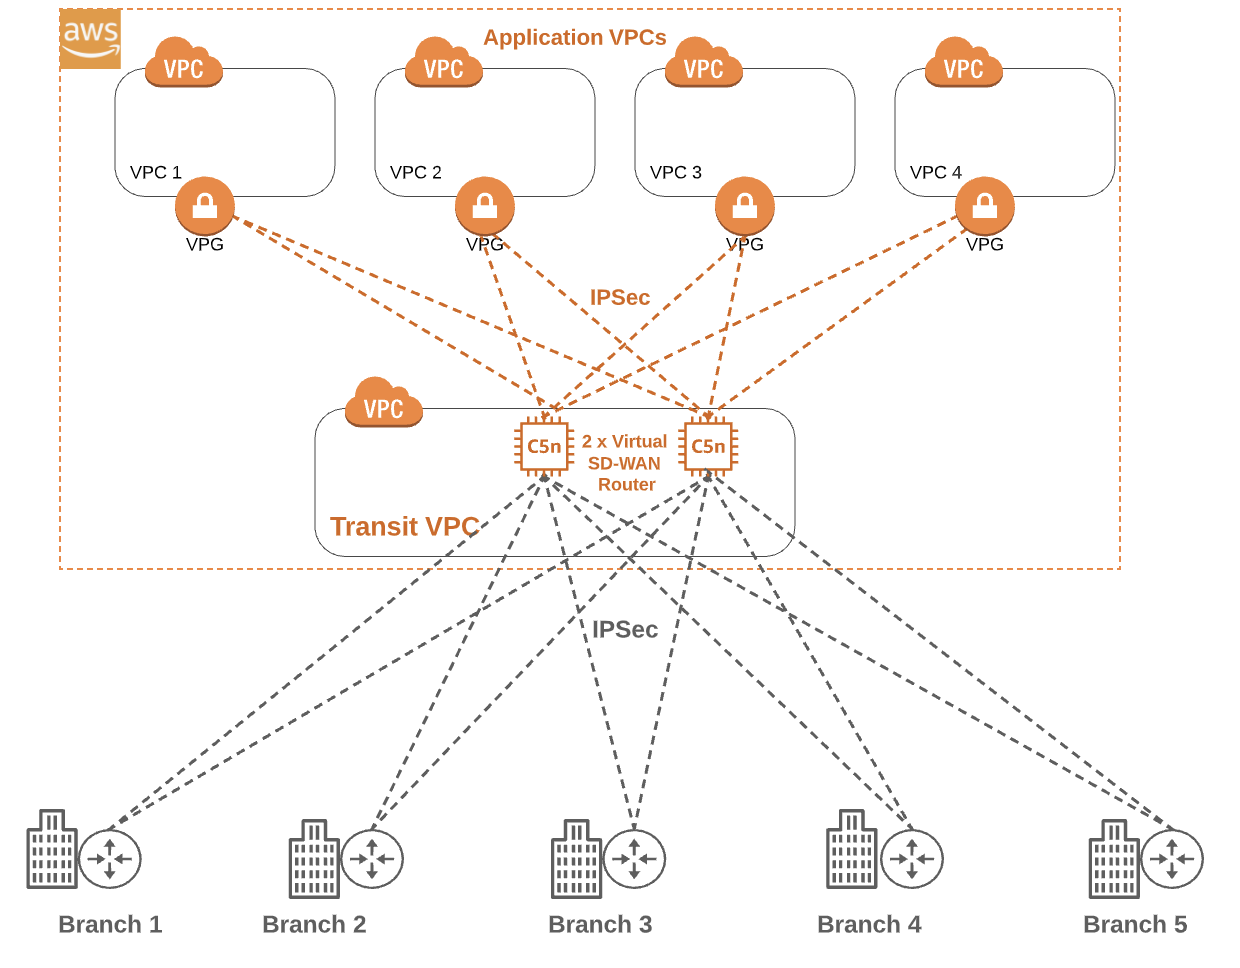 Amazon Web Services (AWS) Application VPC diagram